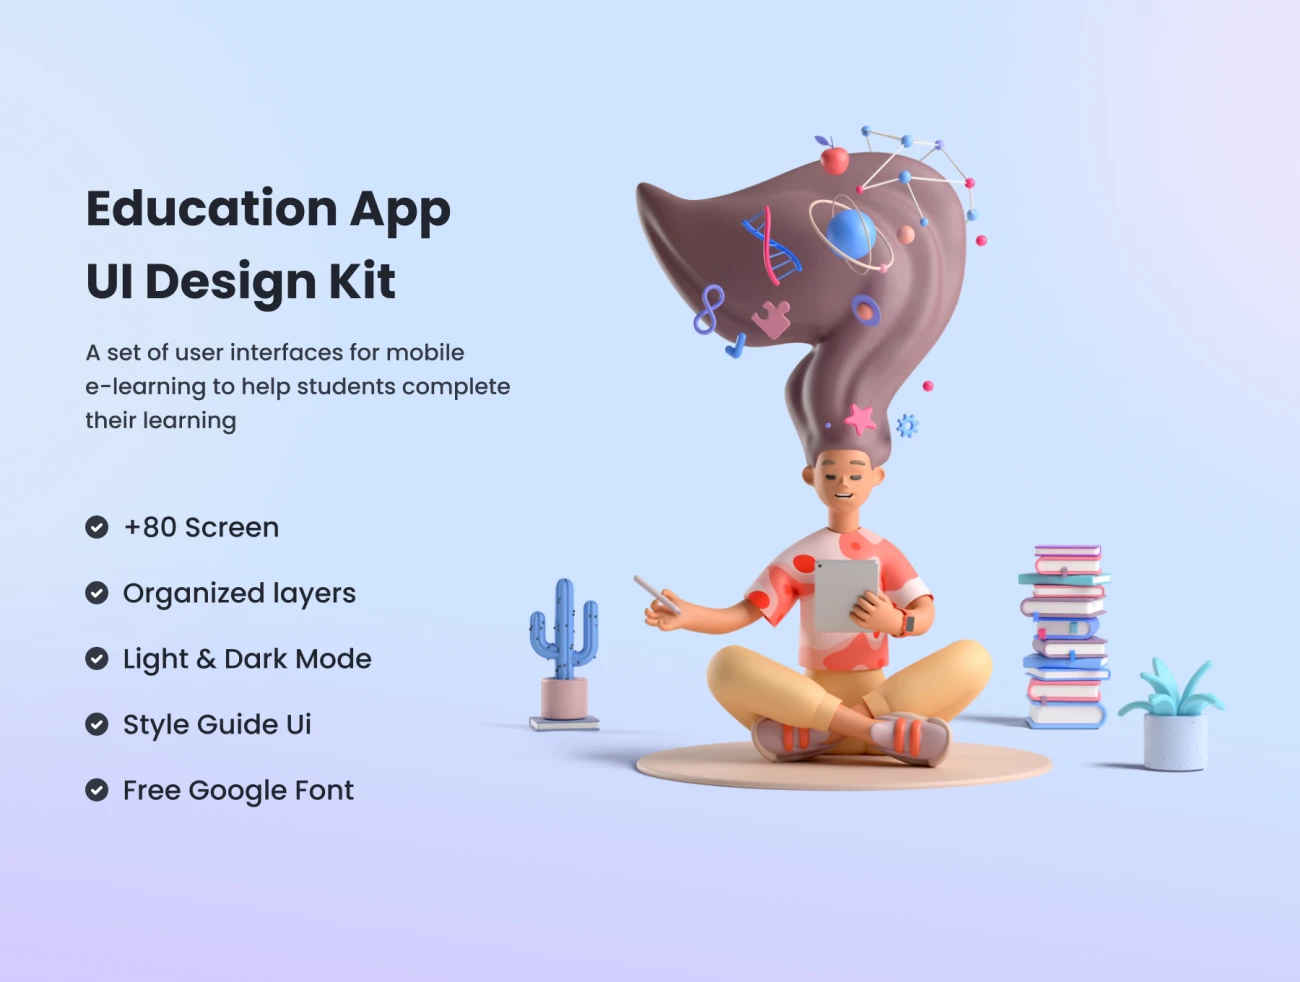 83屏在线教育平台 UI 套件 Education App UI Design Kit-3D/图标、UI/UX、ui套件、主页、介绍、卡片式、图表、场景插画、应用、教育医疗、表单、详情-到位啦UI